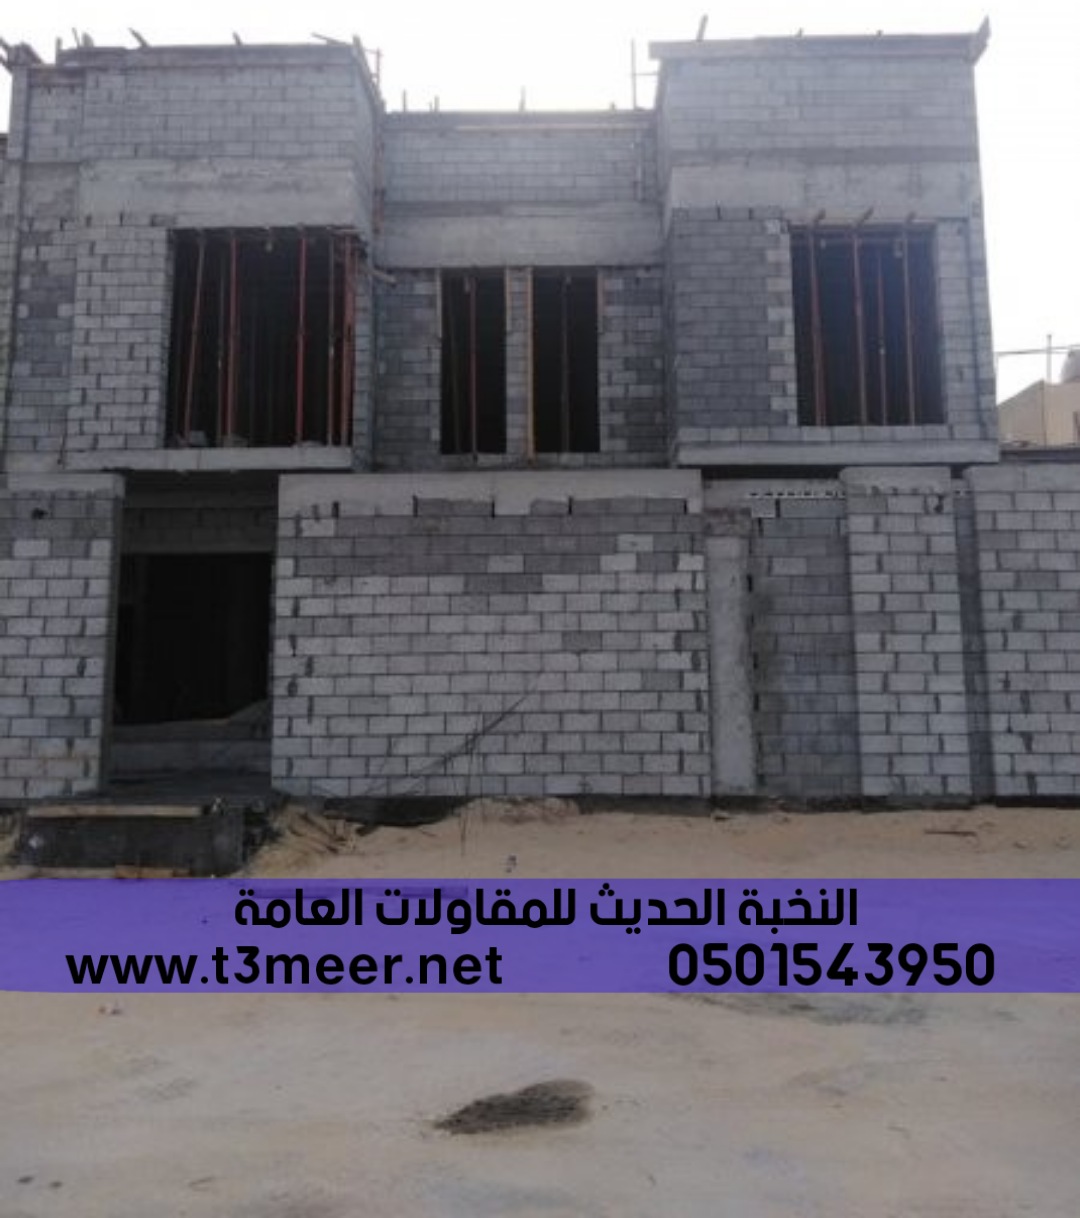 افضل مؤسسة بناء ترميم تشطيب مباني في جدة , 0501543950 P_2275tm01f7